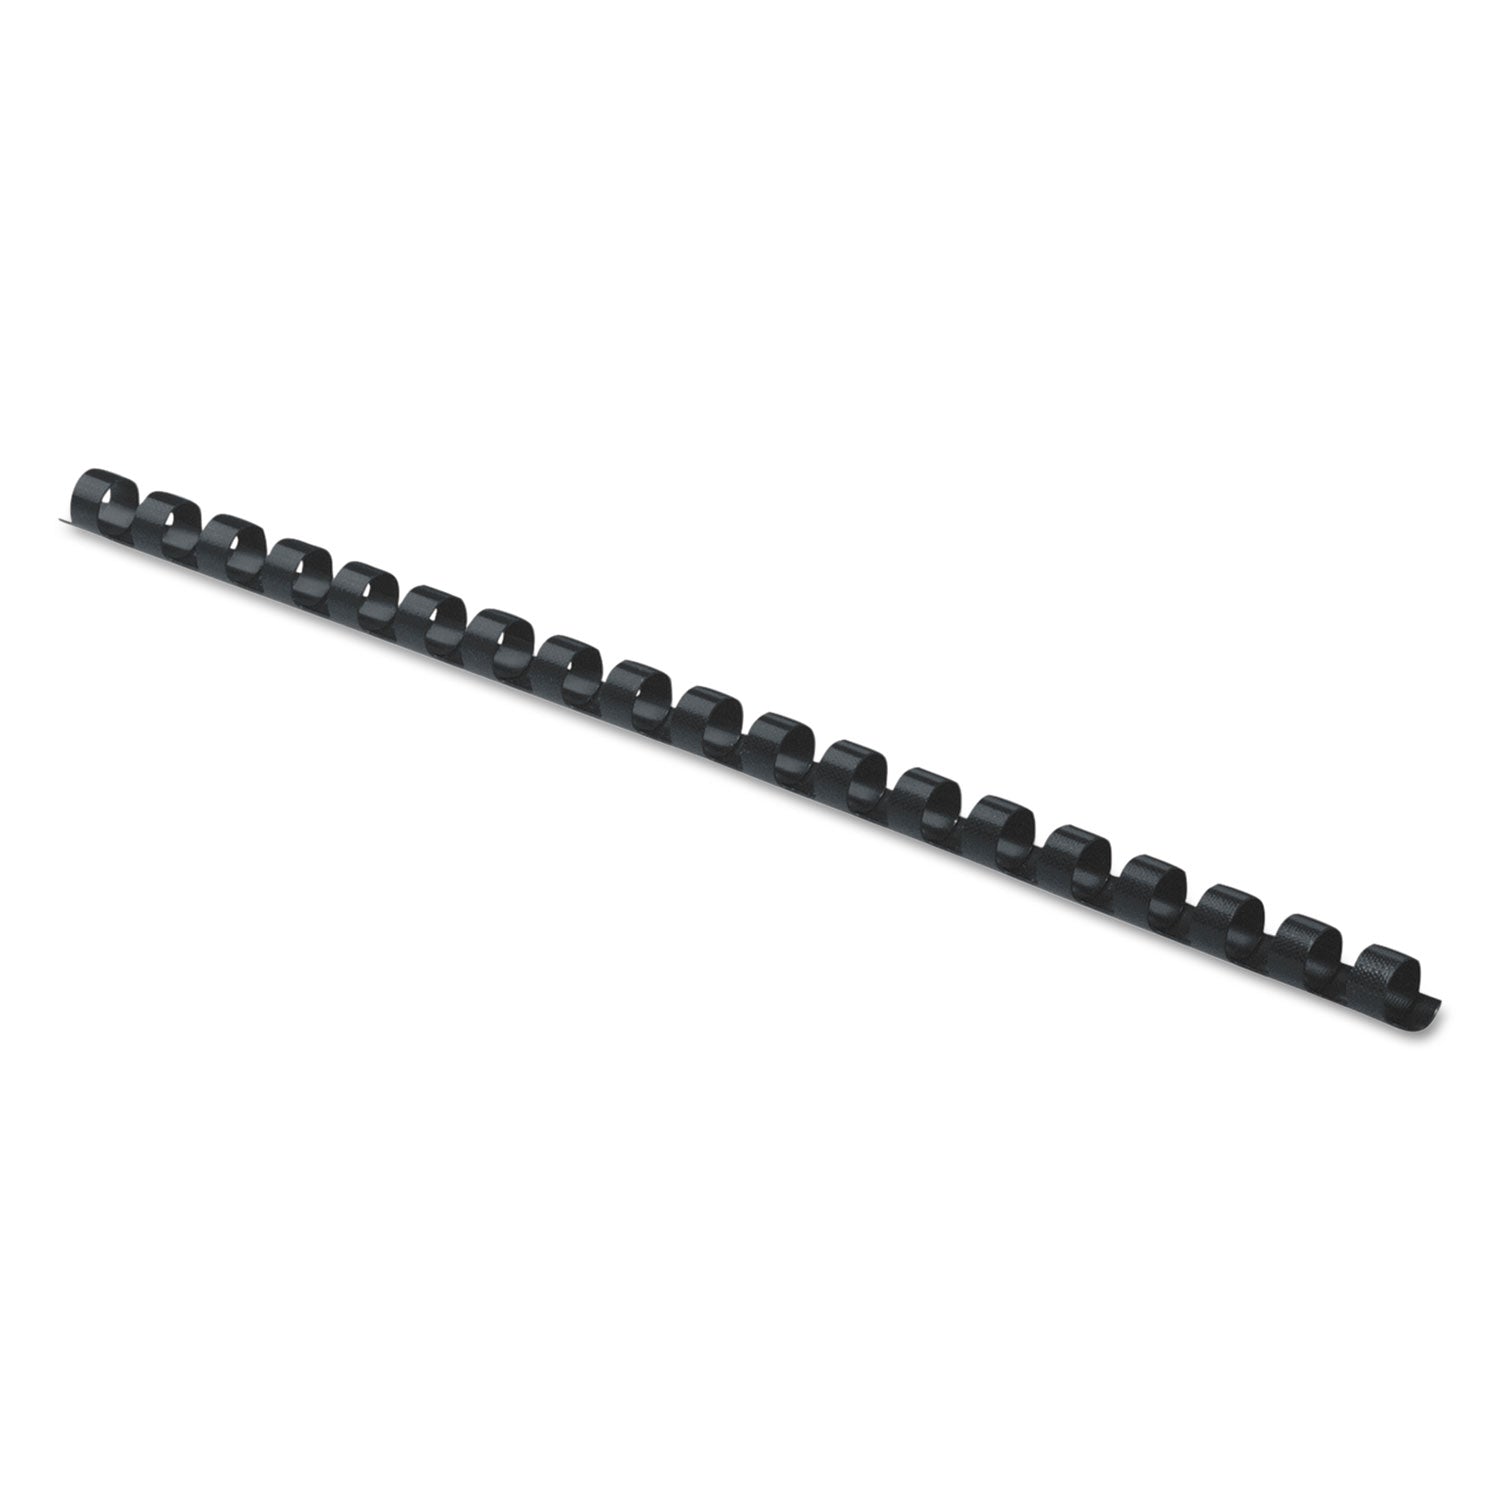 Plastic Comb Bindings, 5/16" Diameter, 40 Sheet Capacity, Black, 100/Pack - 